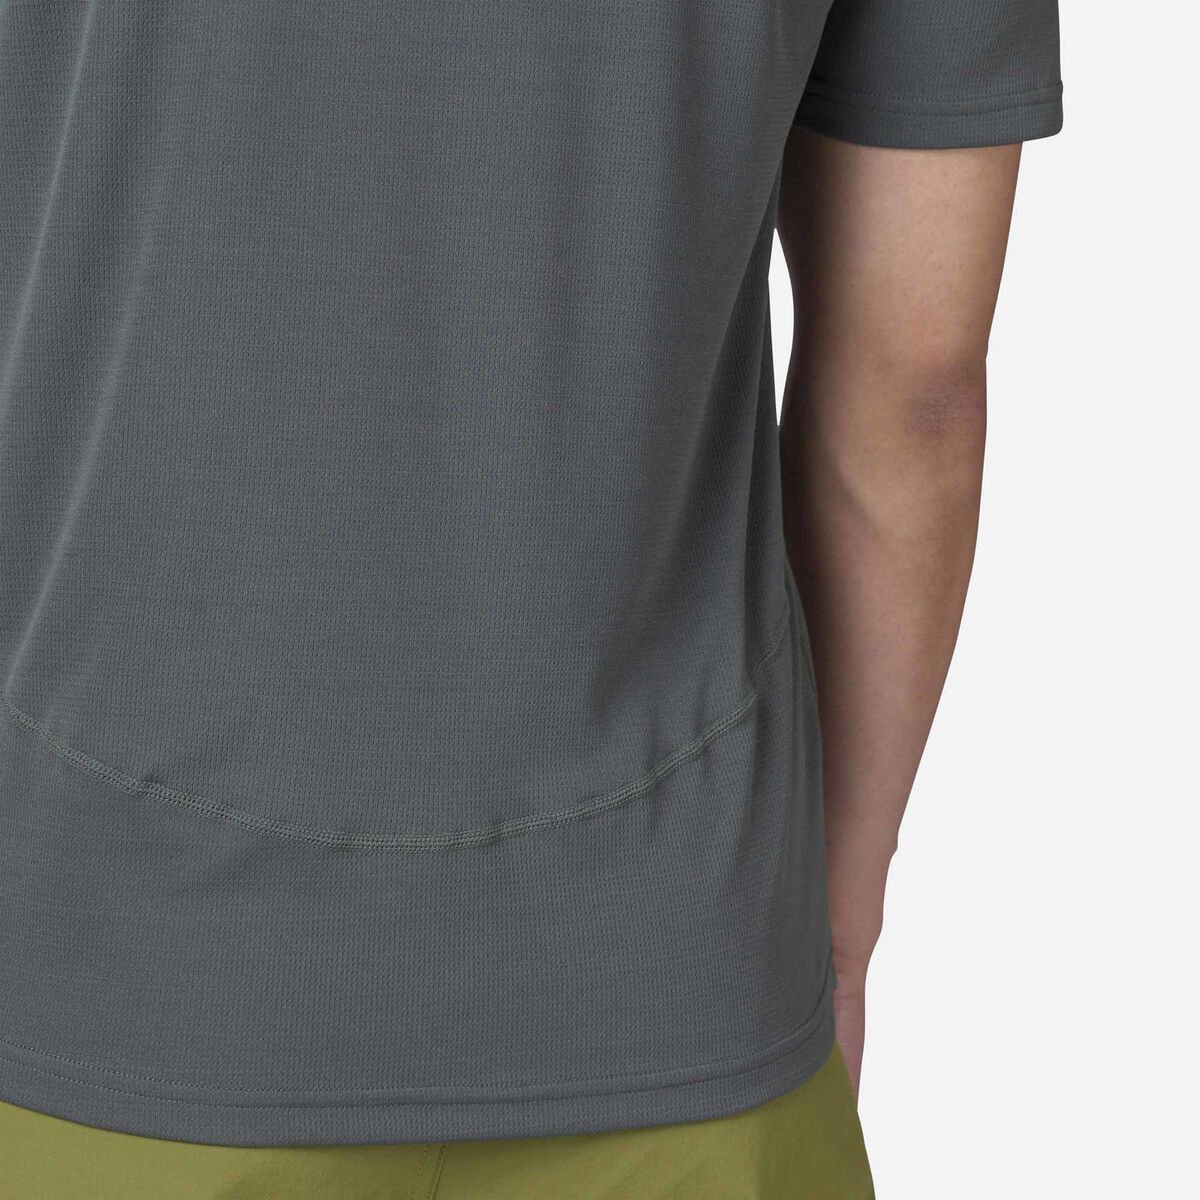 Rossignol T-shirt de randonnée Plain Homme grey